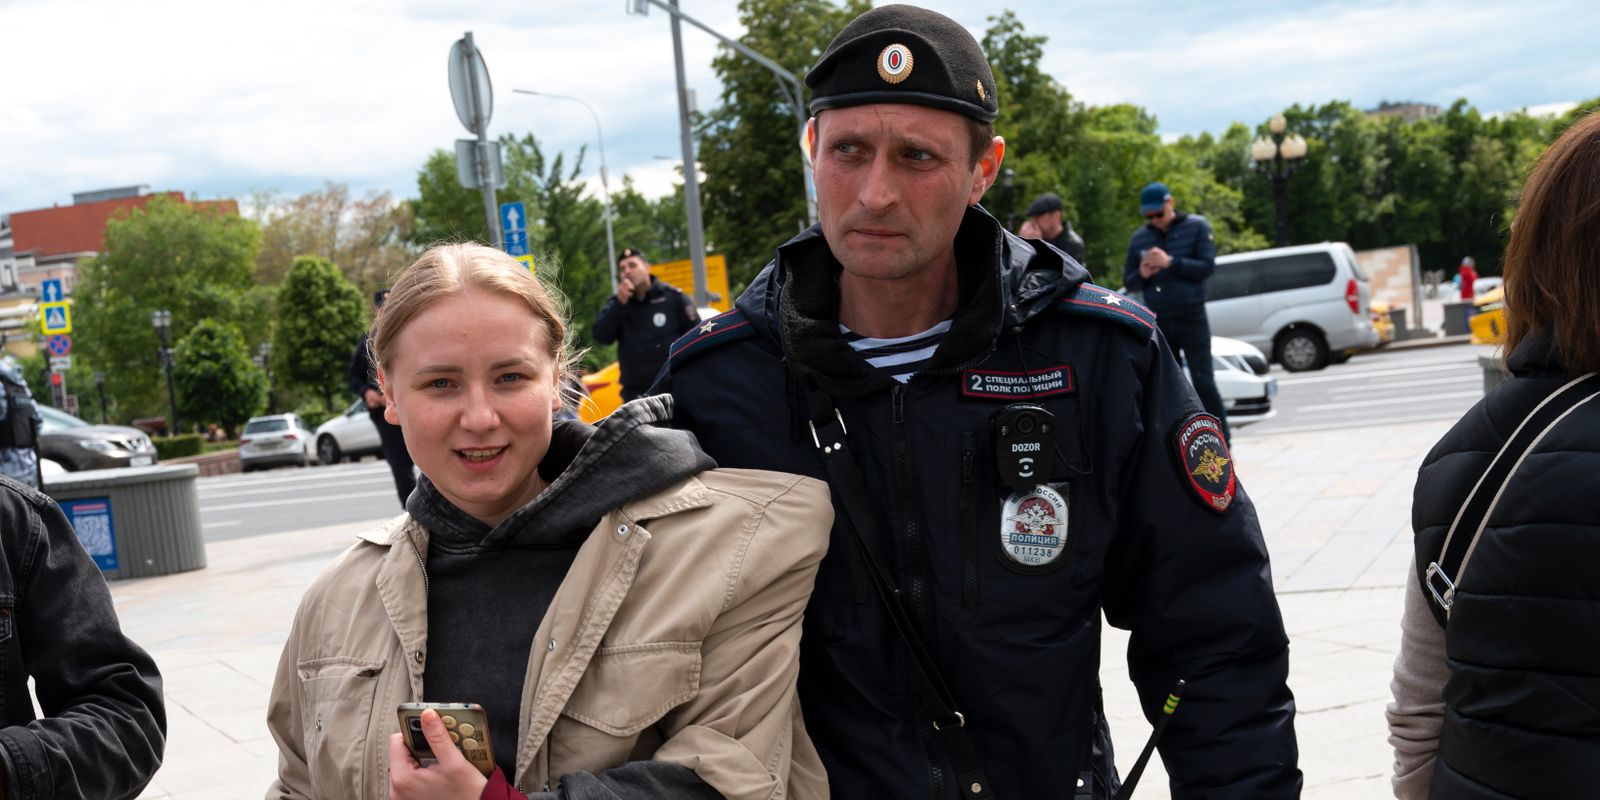 navalnyjs födelsedag firas med protester – flera gripna